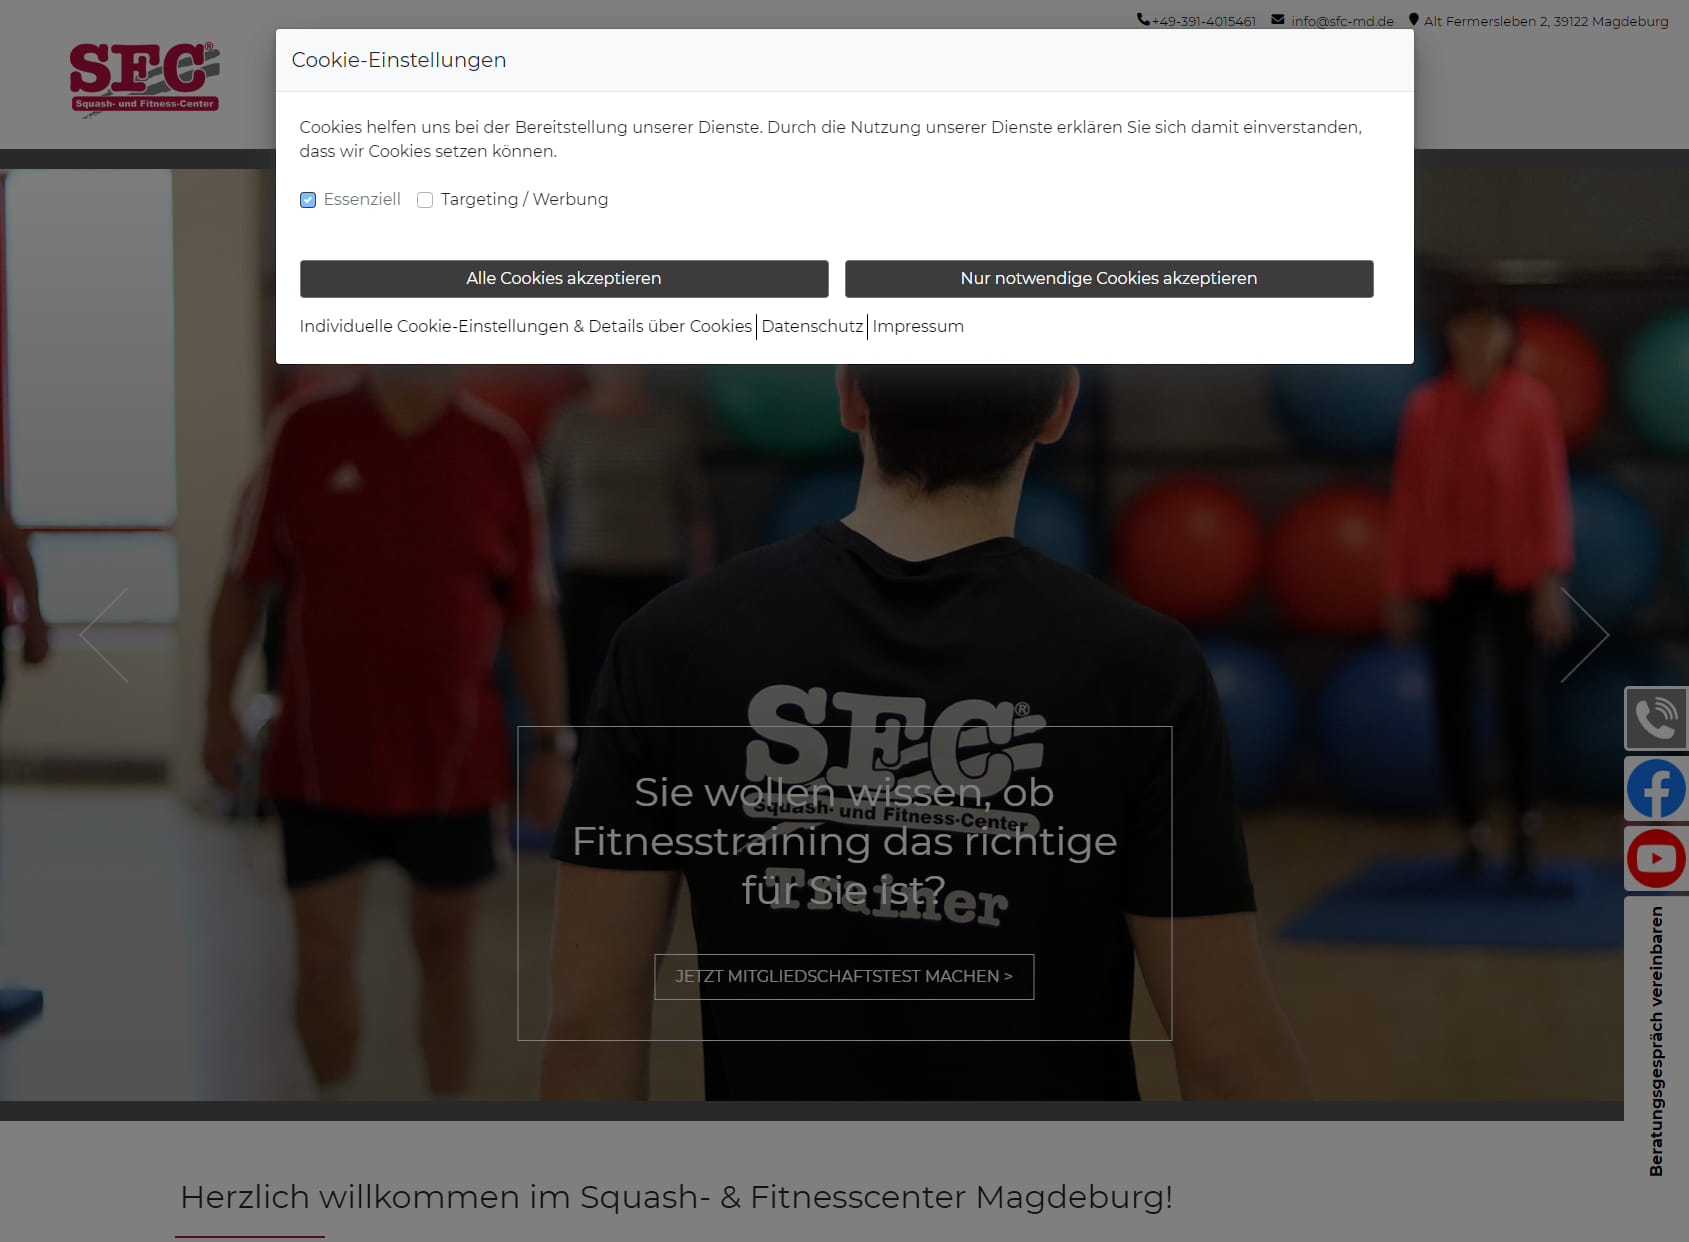 SFC - Squash und Fitness Center Magdeburg - Ulrich Stern und Co. GbR